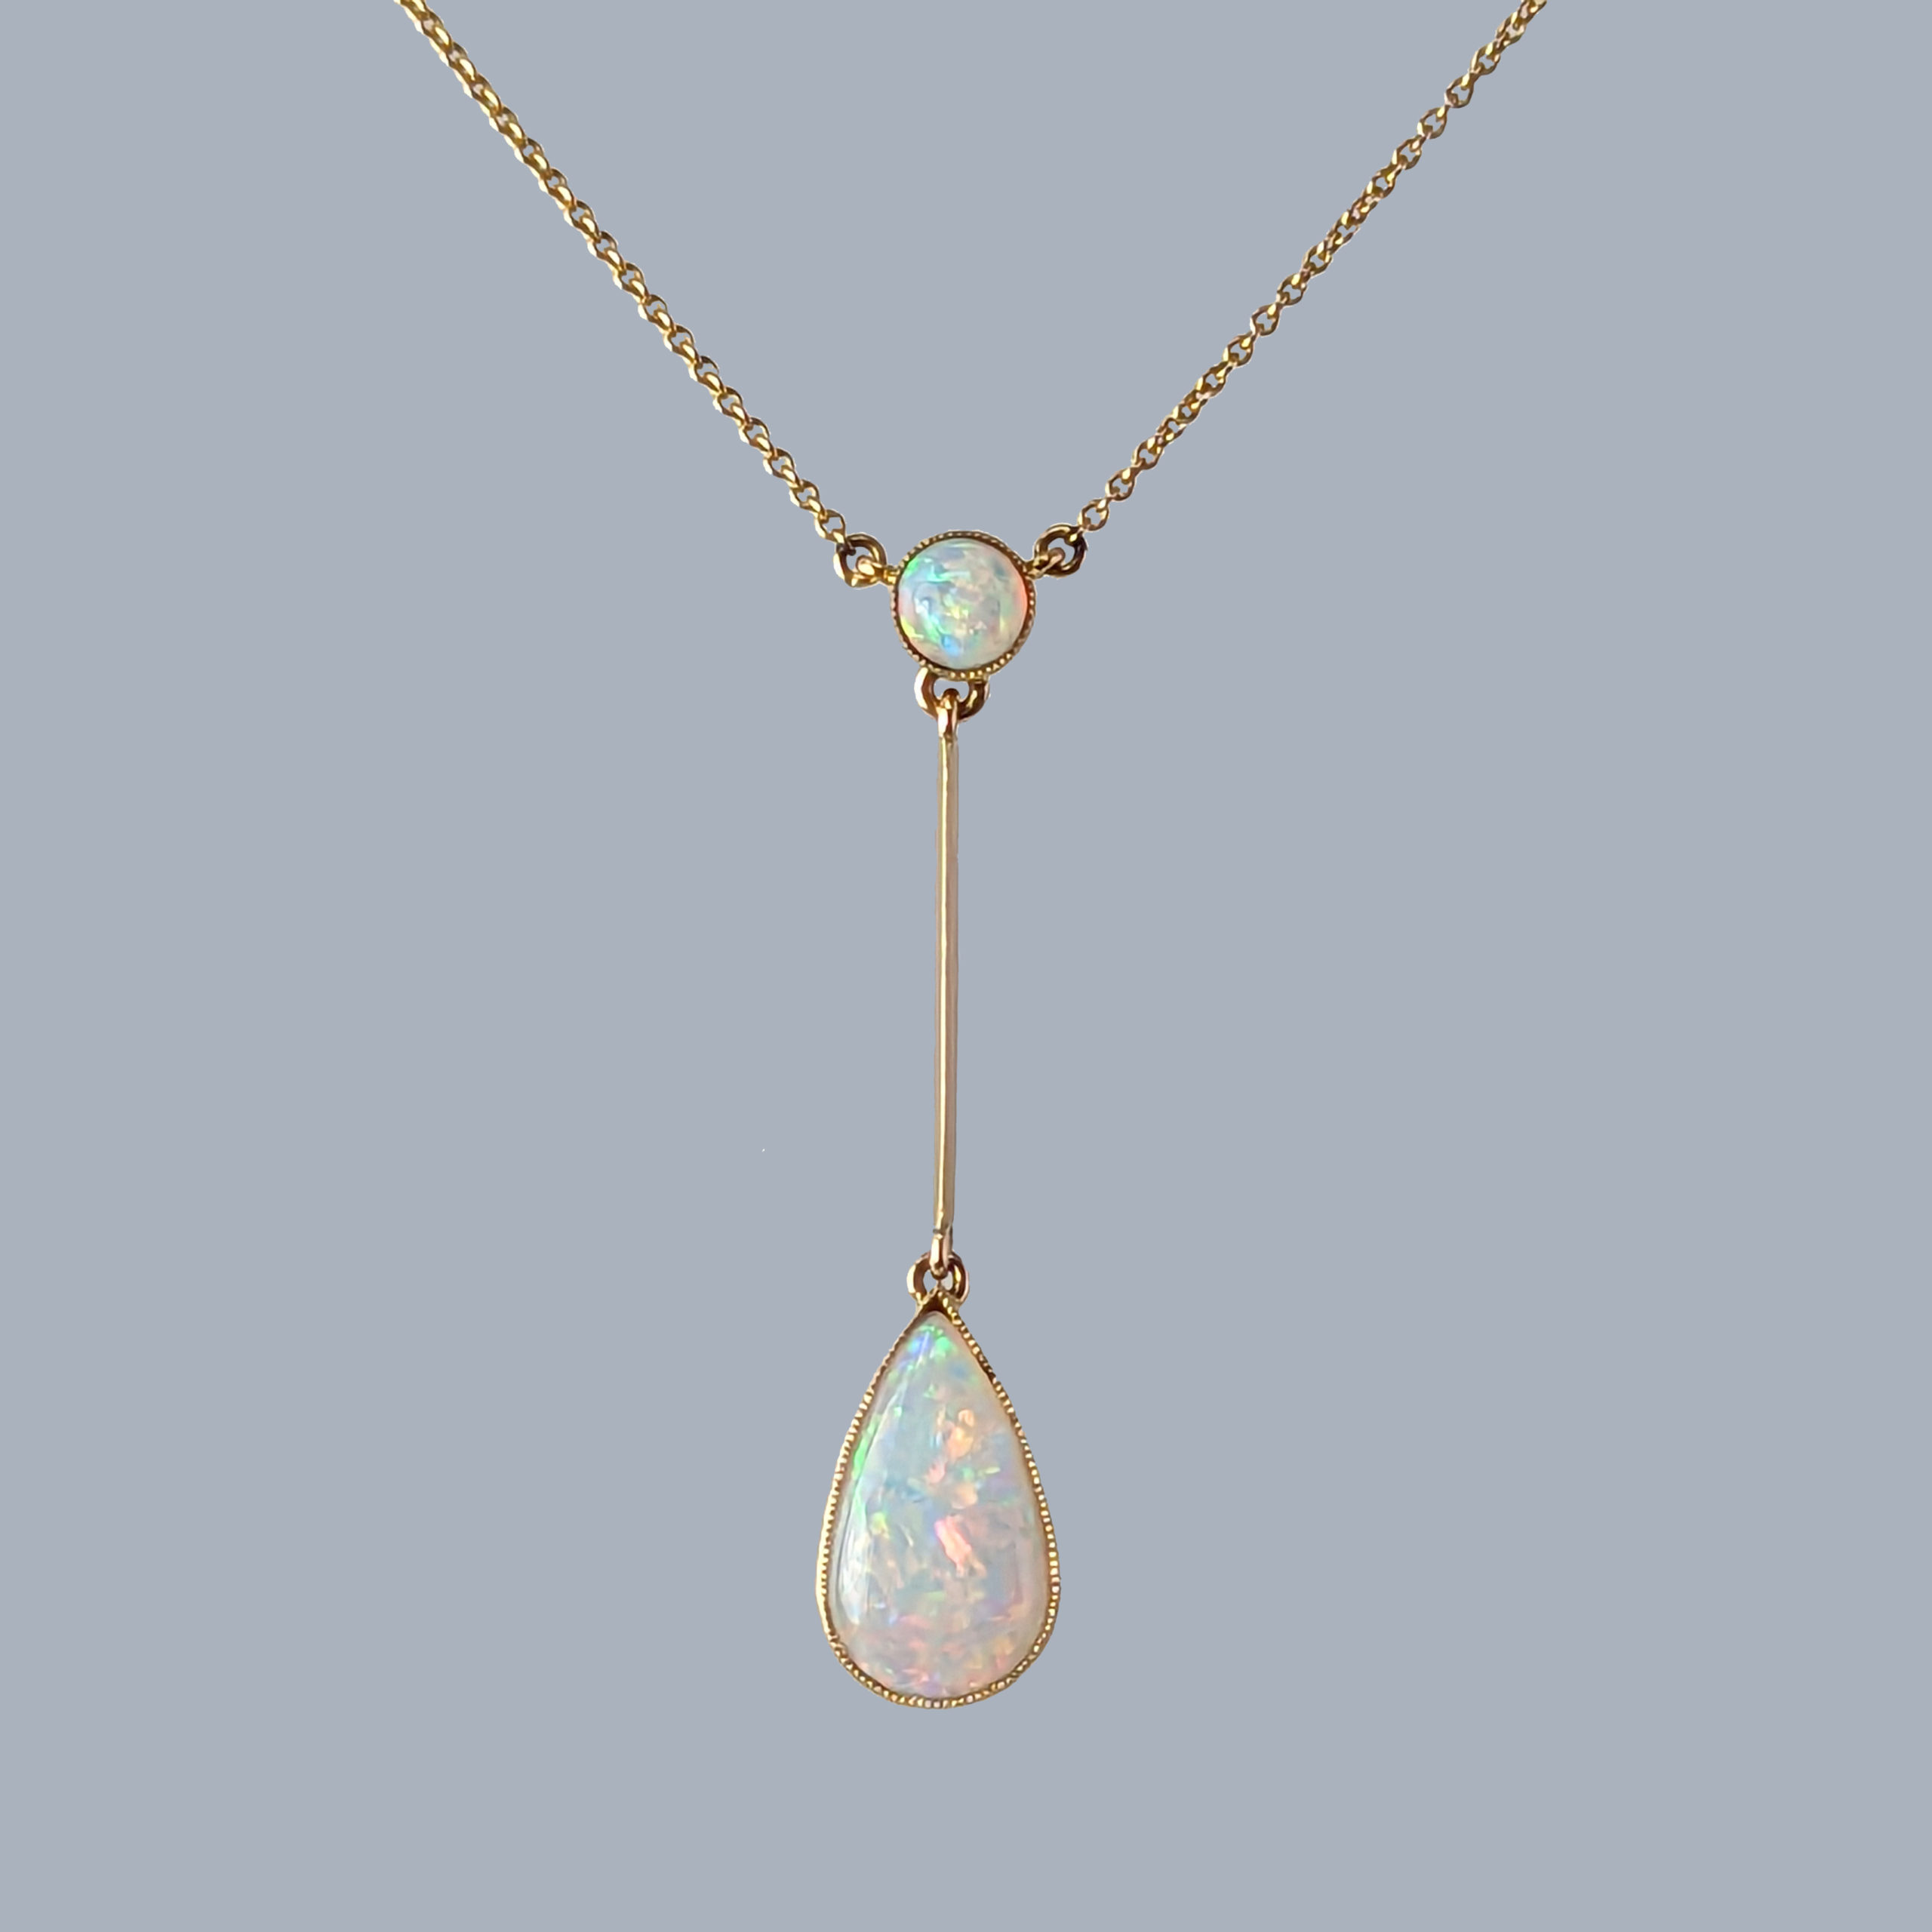 Antique Edwardian Opal Necklace